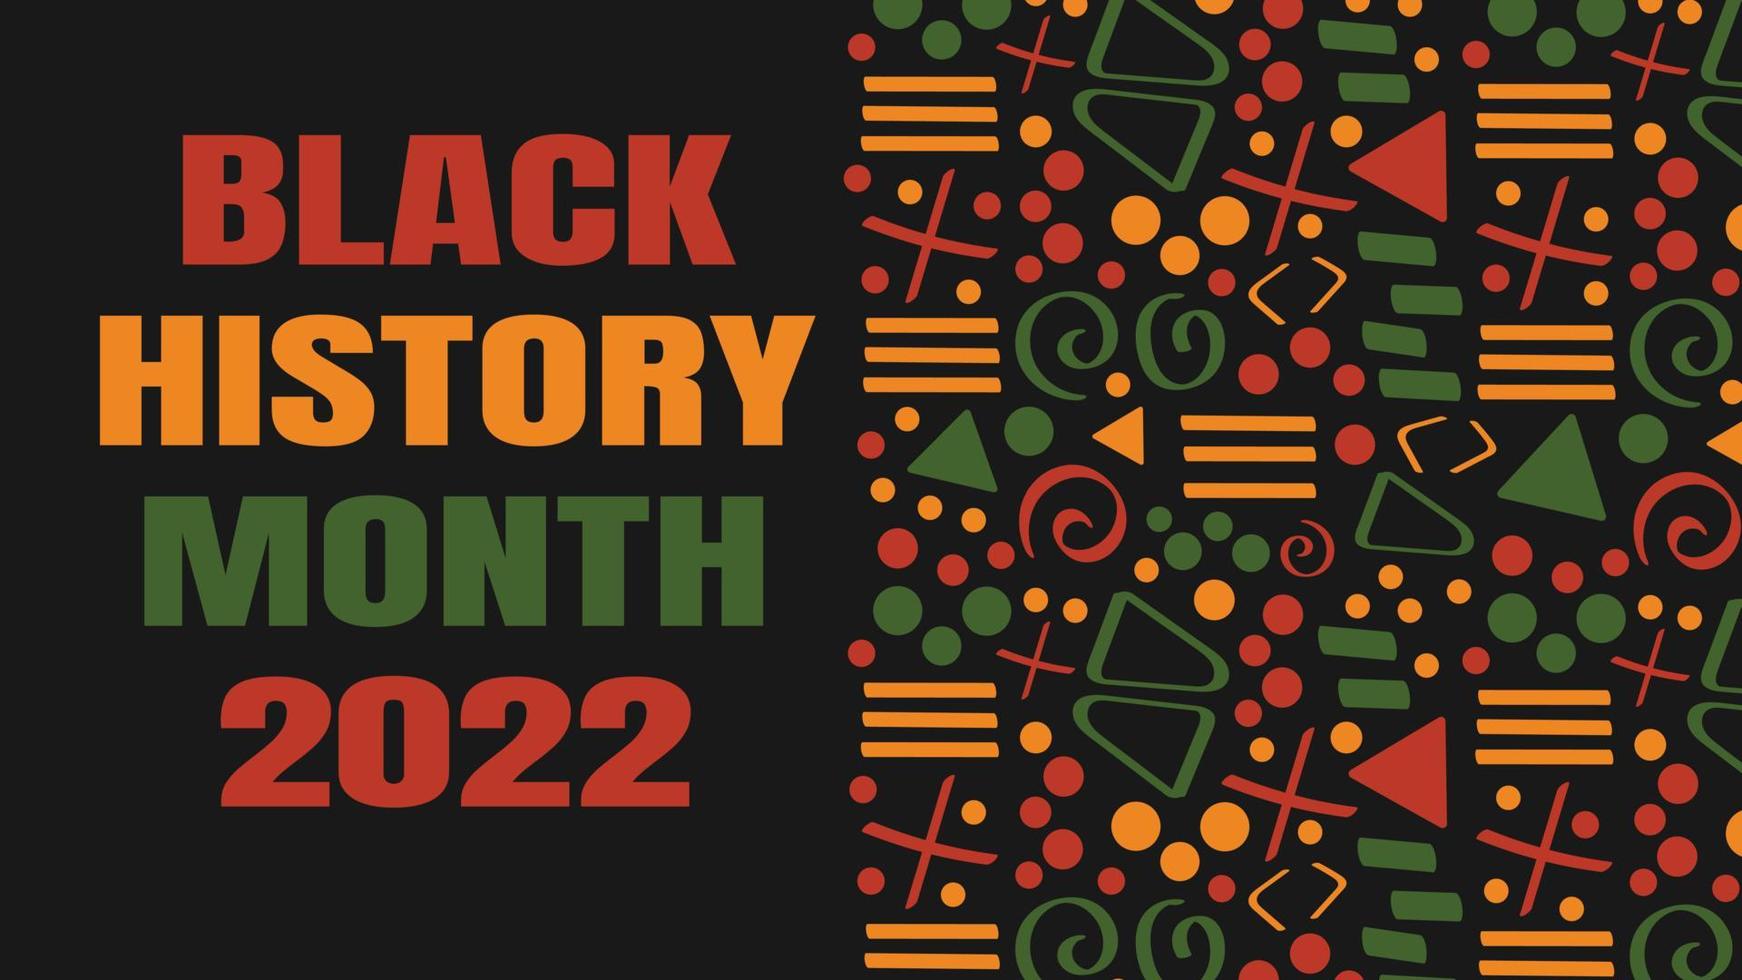 zwarte geschiedenis maand 2022 banner met tribal Afrikaanse patroon ornament - rood, geel, groen. achtergrond voor banner, briefkaart, flyer vector design